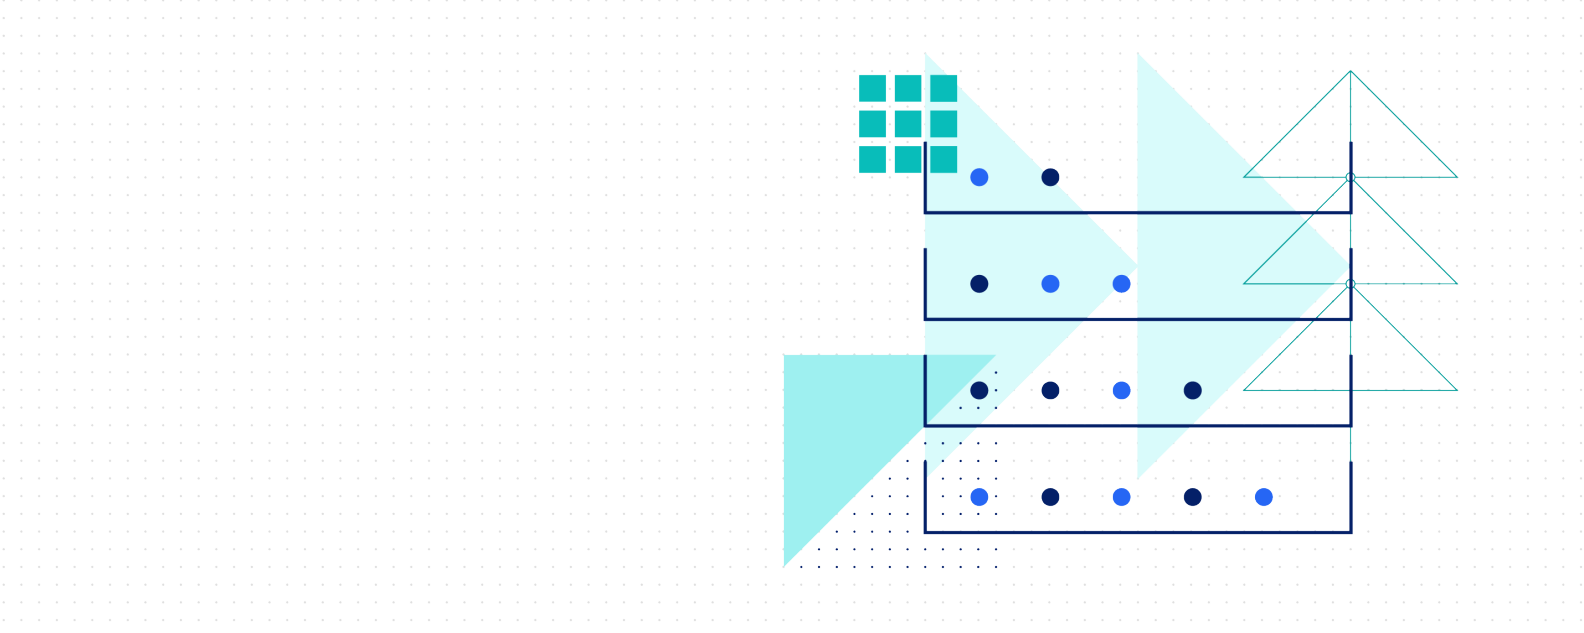 ドット、三角形、長方形のレイヤーを示す図